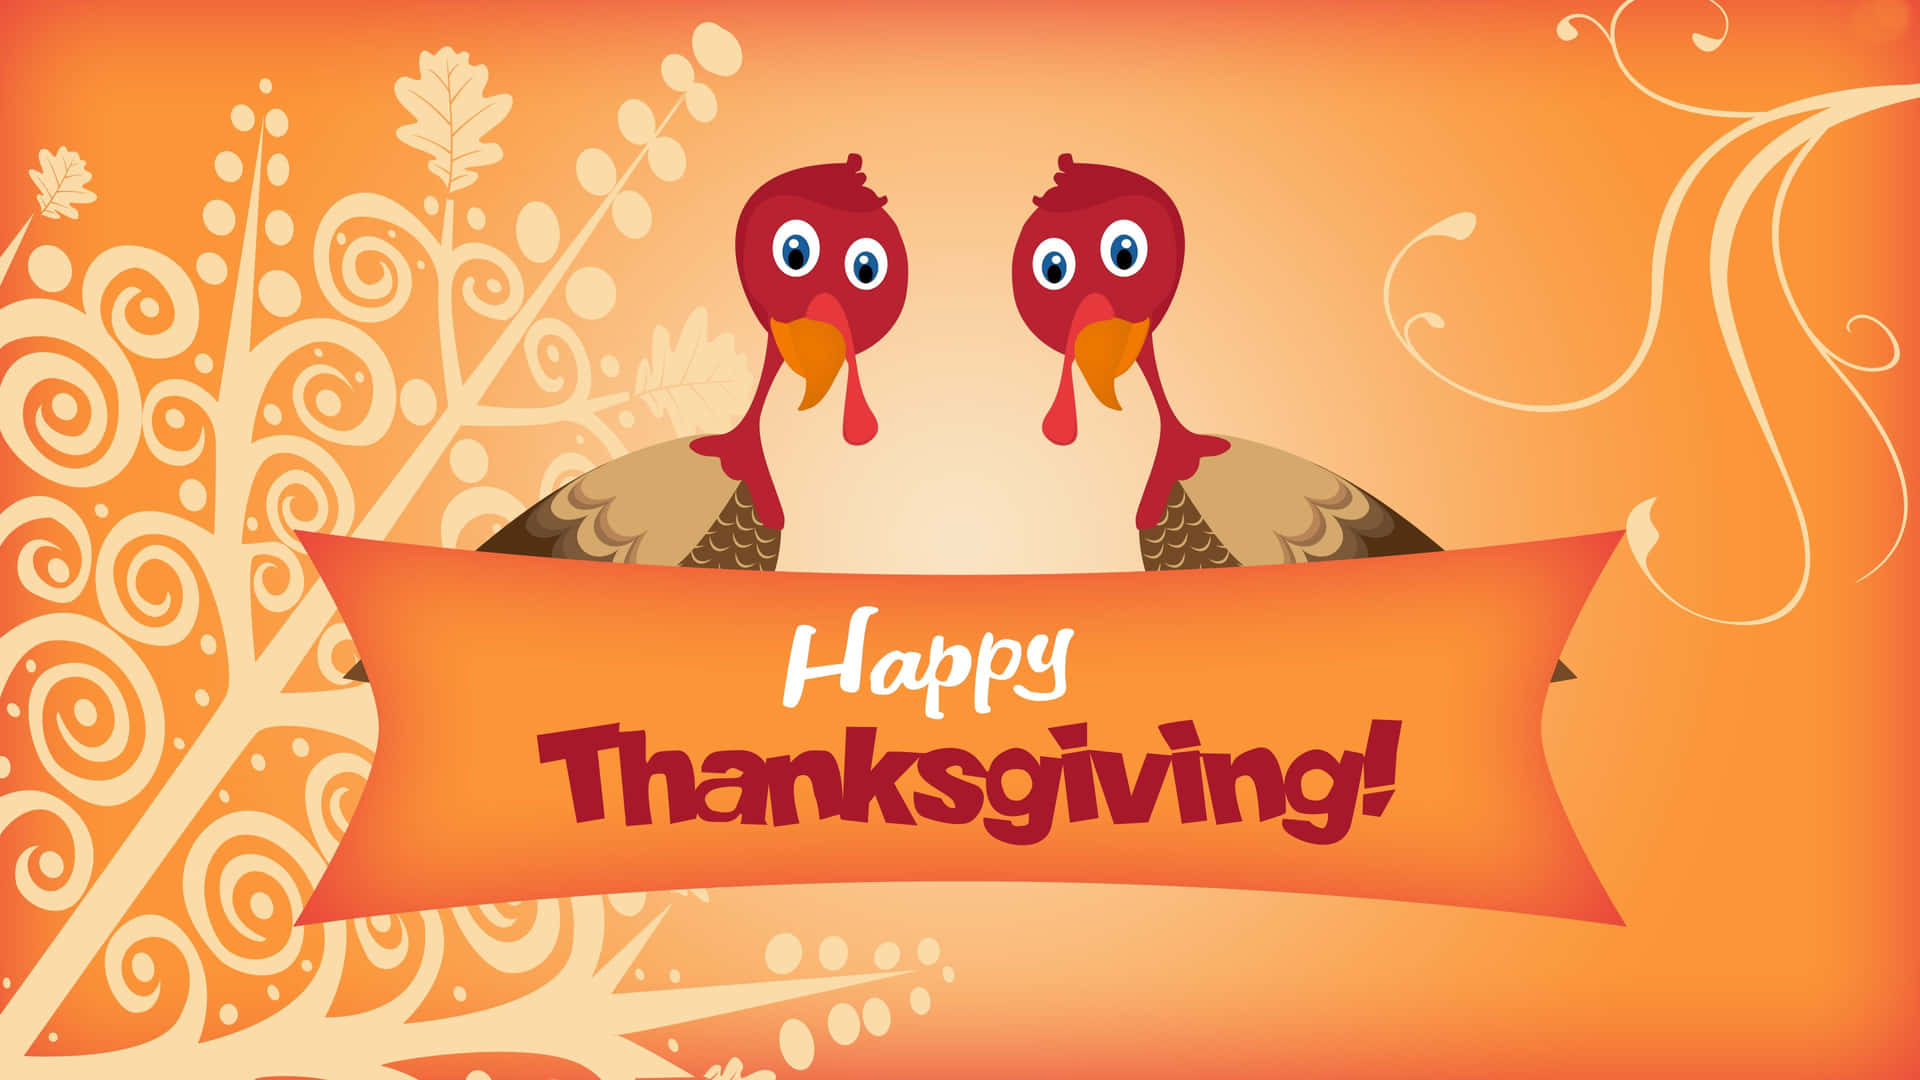 Let Us Thanksgiving Together! Background